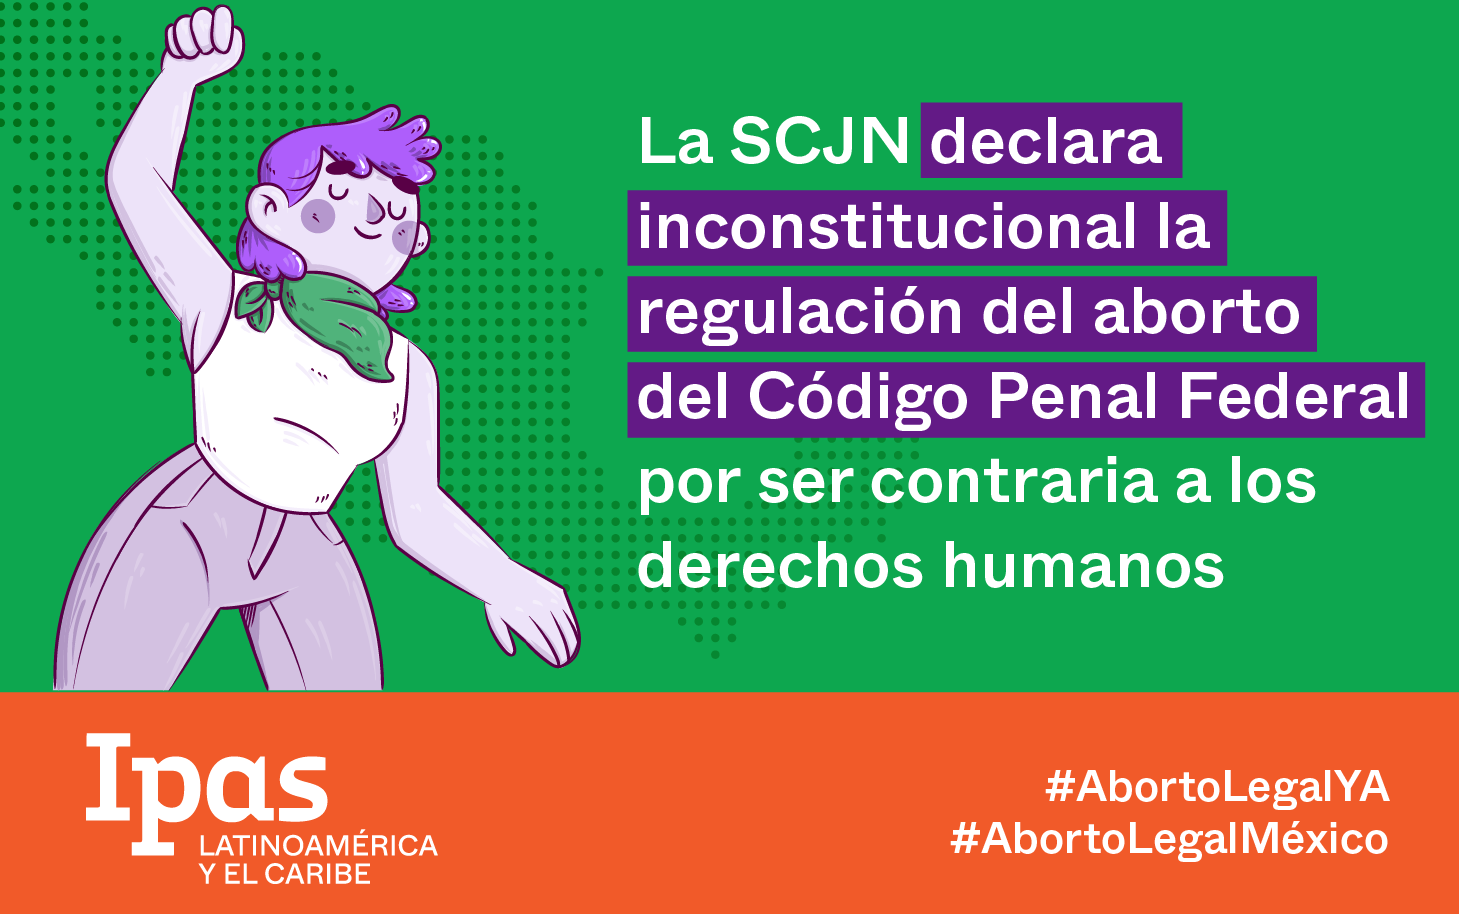 Día histórico. La SCJN declara inconstitucional la regulacion del aborto del Código Penal Federal por ser contraria a los derechos humanos